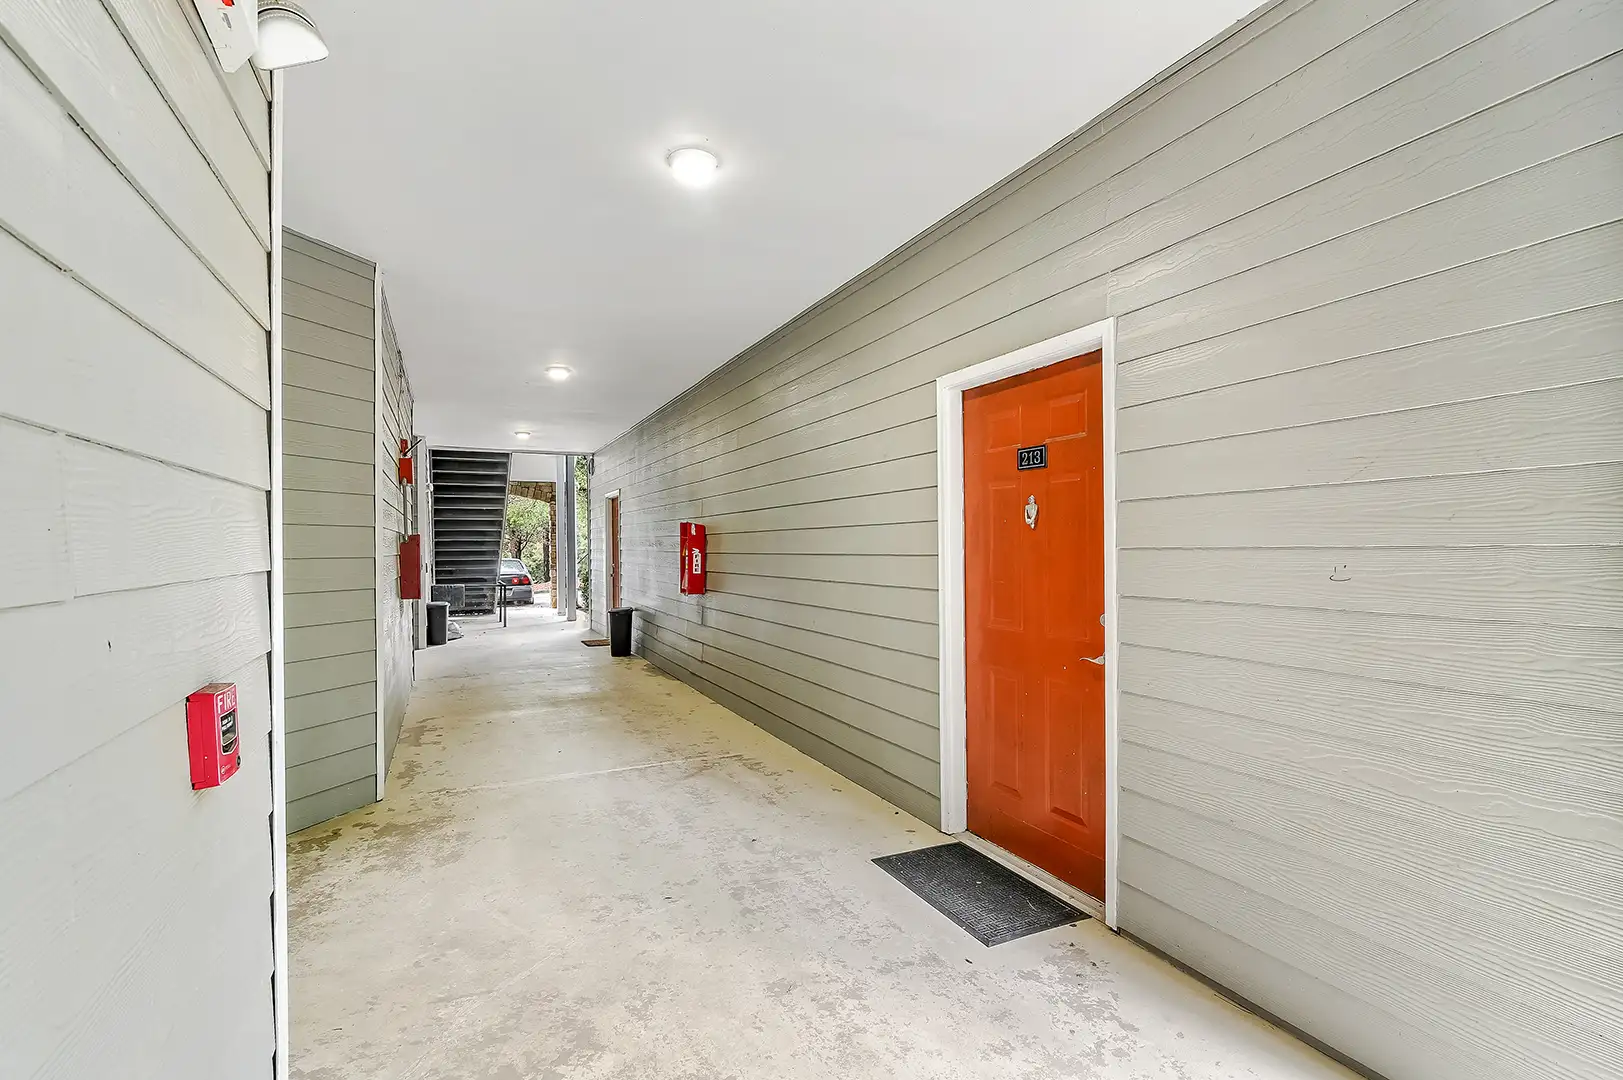 apartment hallway with orange door